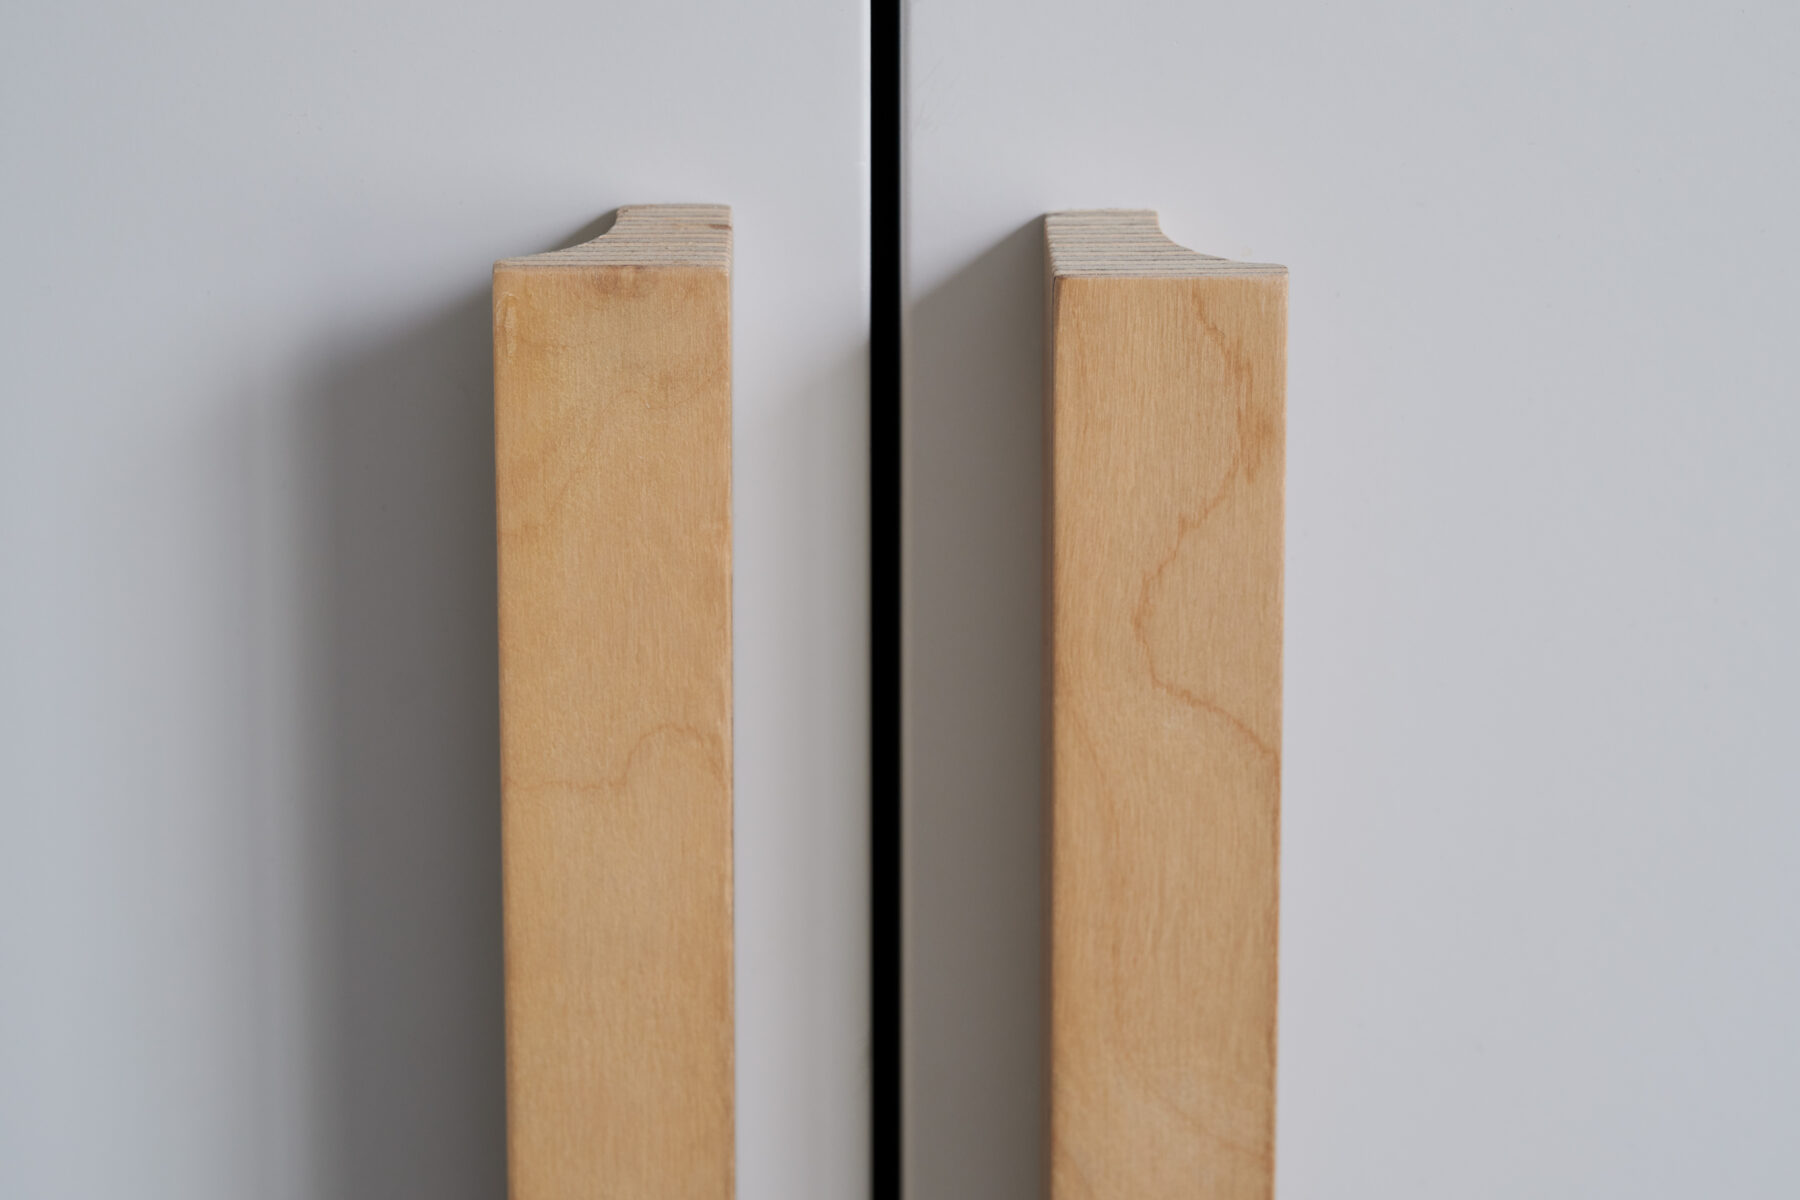 Bespoke wooden half-moon handles